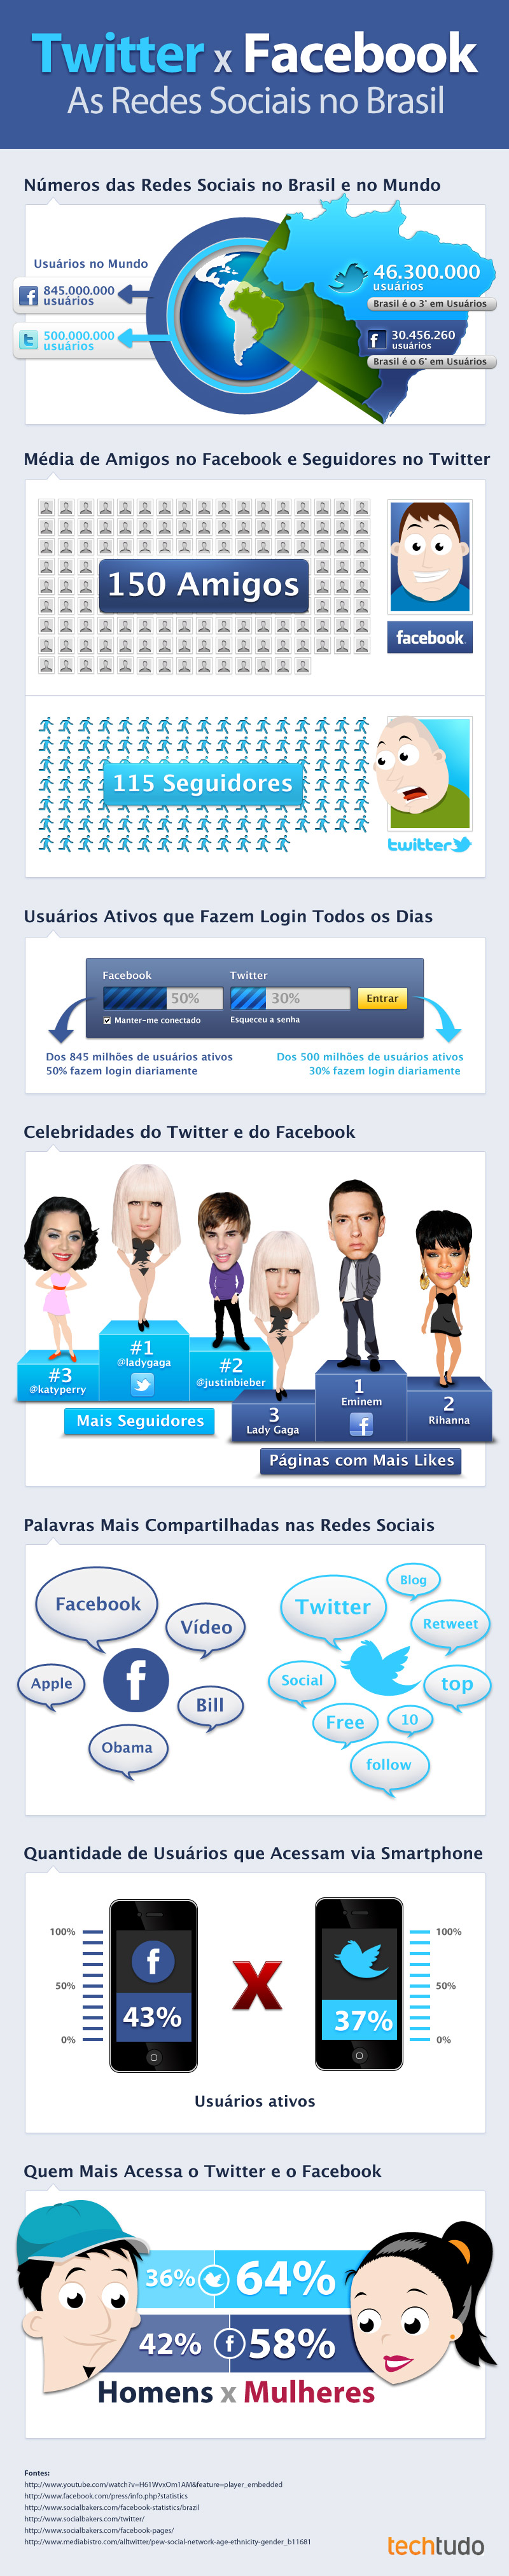 twitter y facebook en brasil